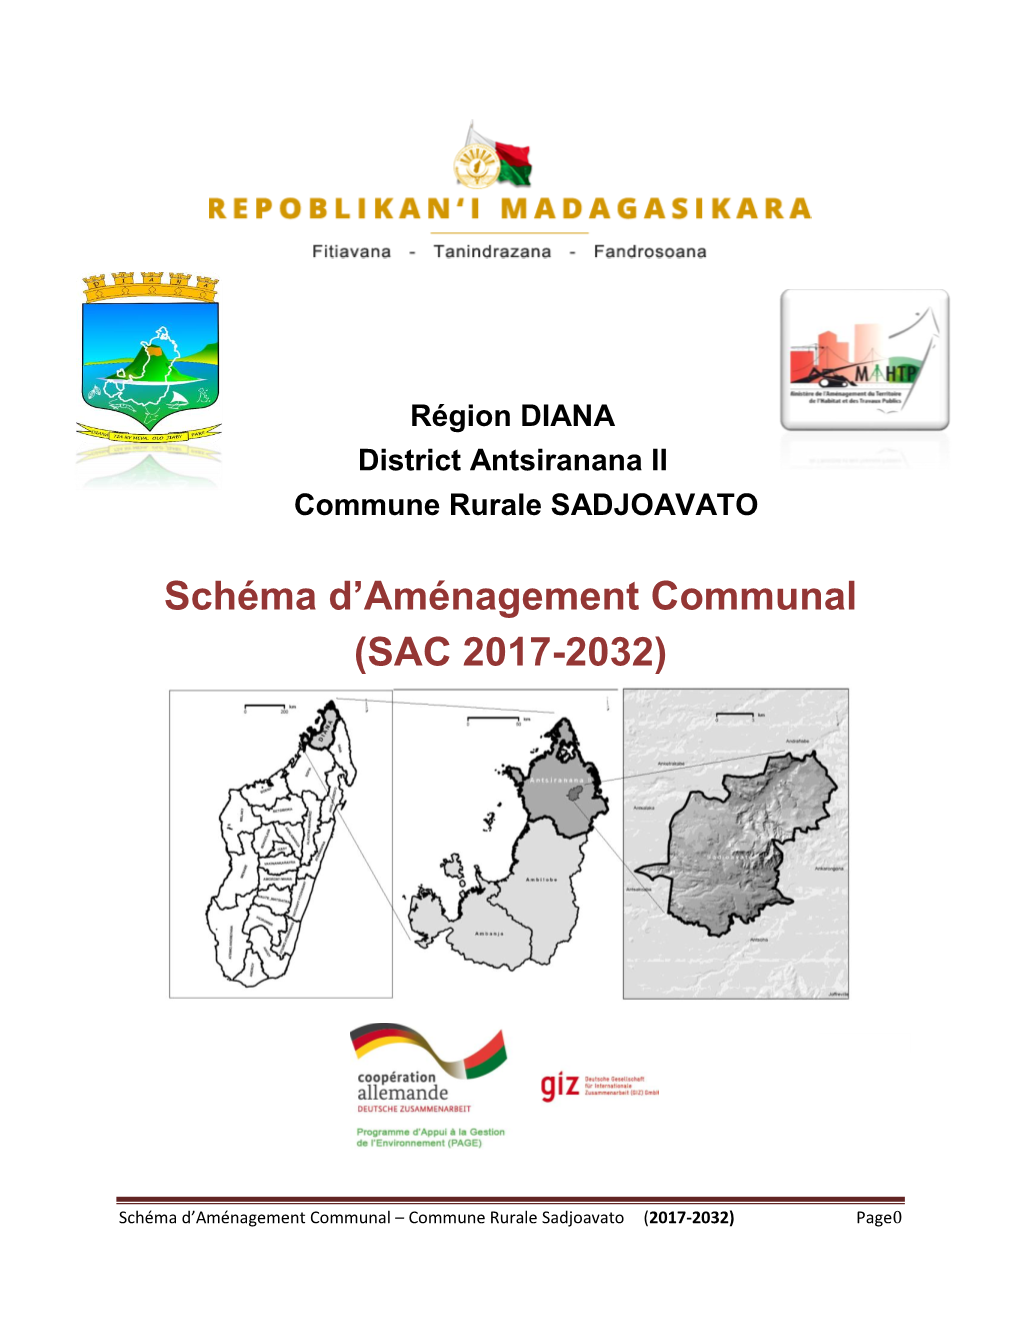 Schéma D'aménagement Communal (SAC 2017-2032)